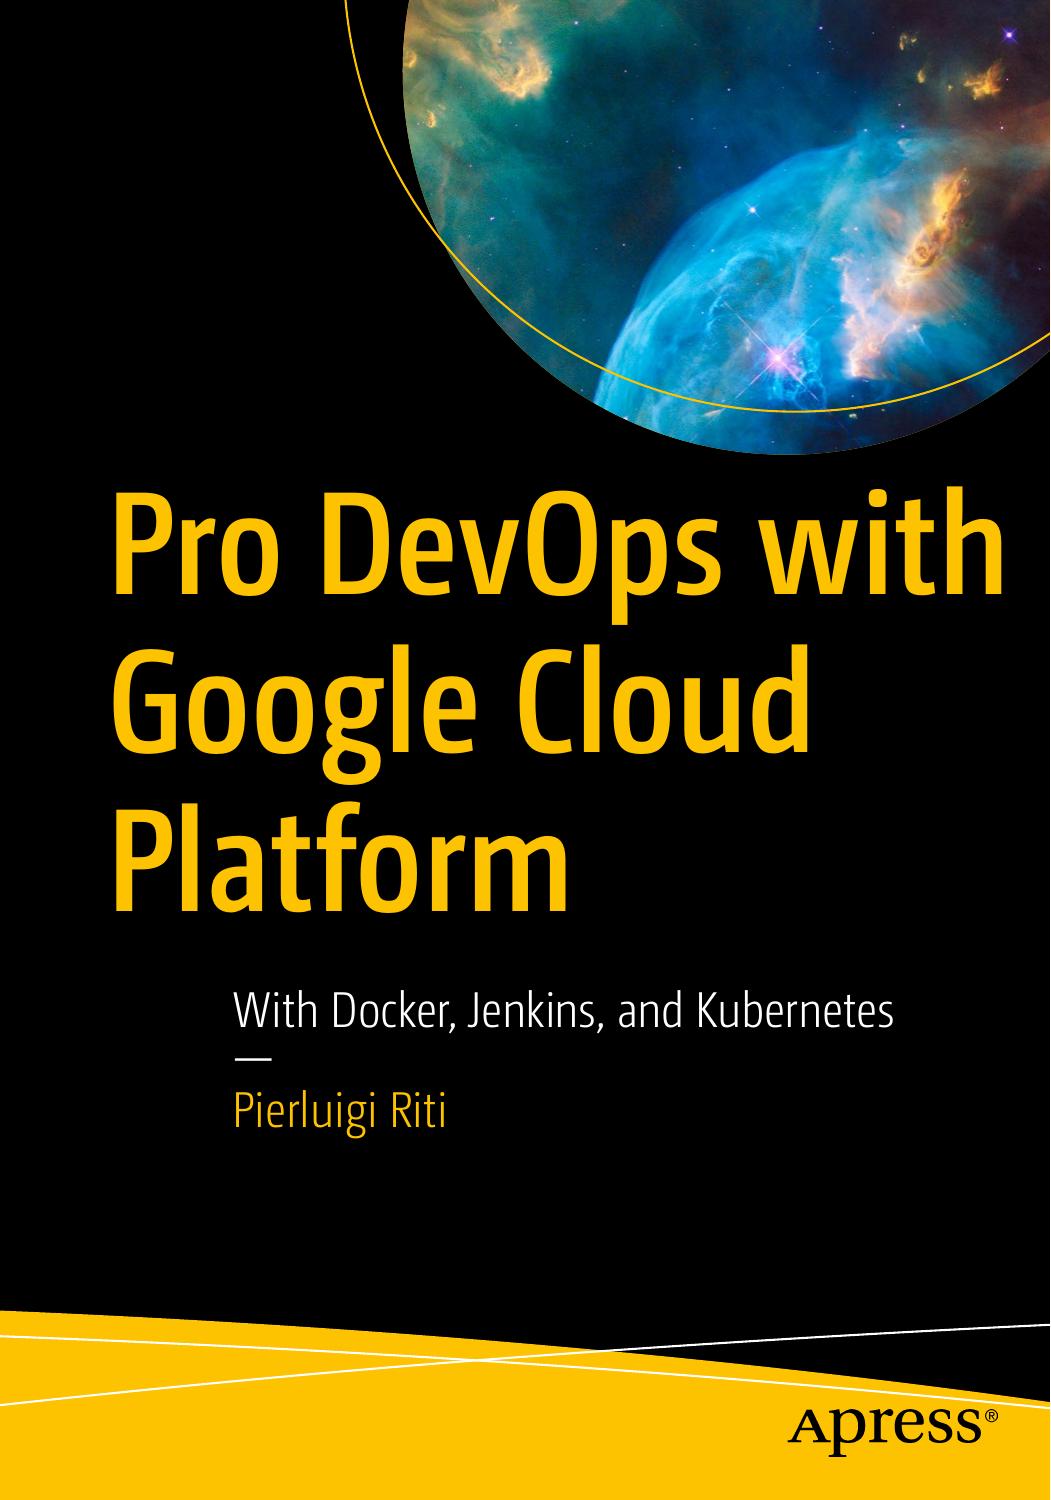 Pro DevOps with Google Cloud Platform: with Docker, Jenkins, and Kubernetes